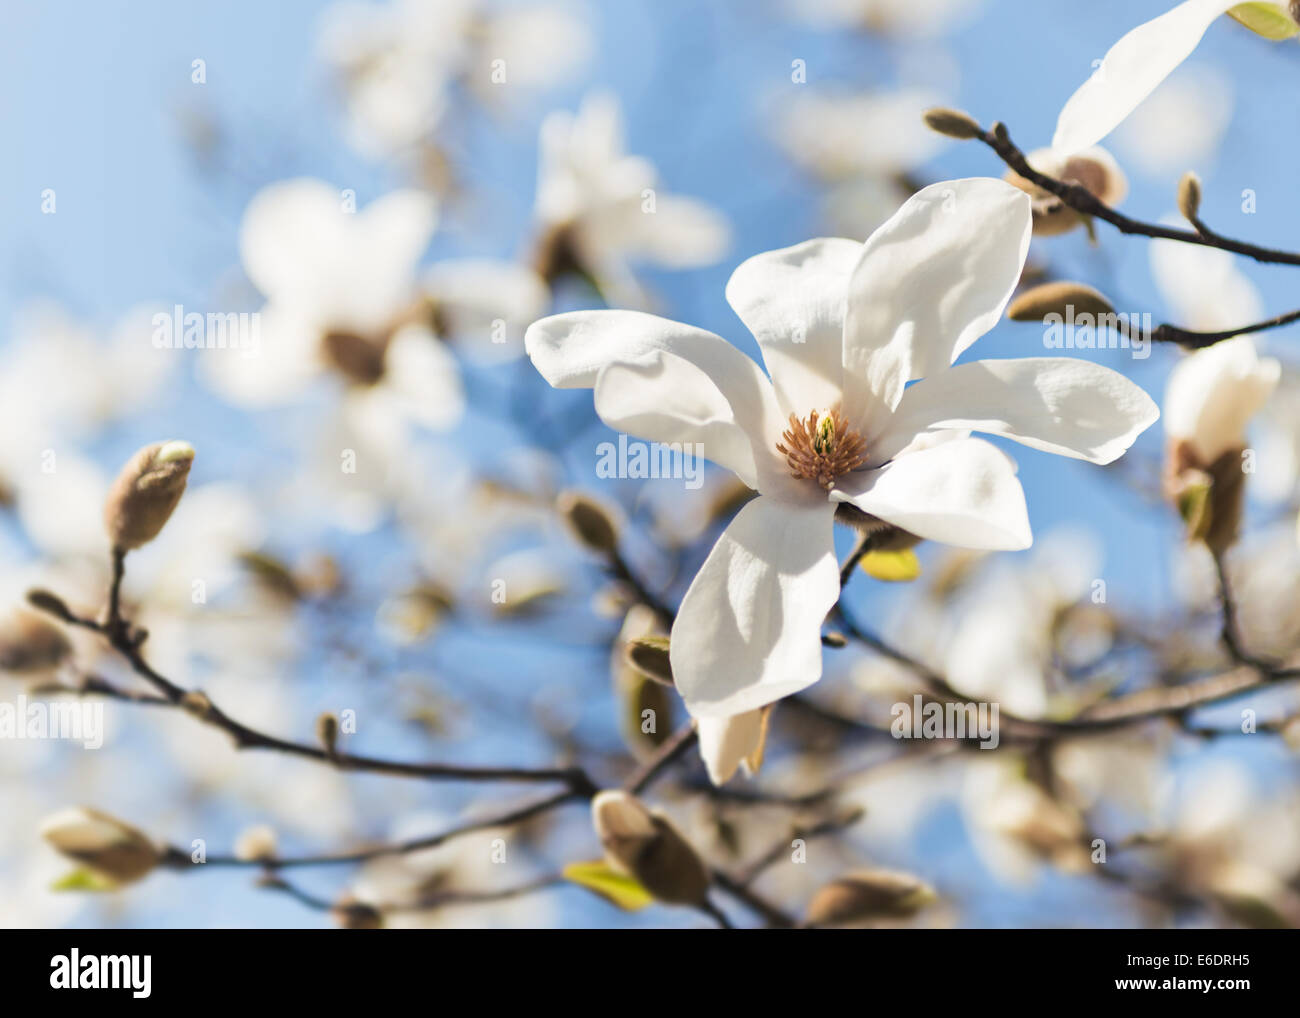 Magnolia tree in full flower bloom against blue sky Stock Photo